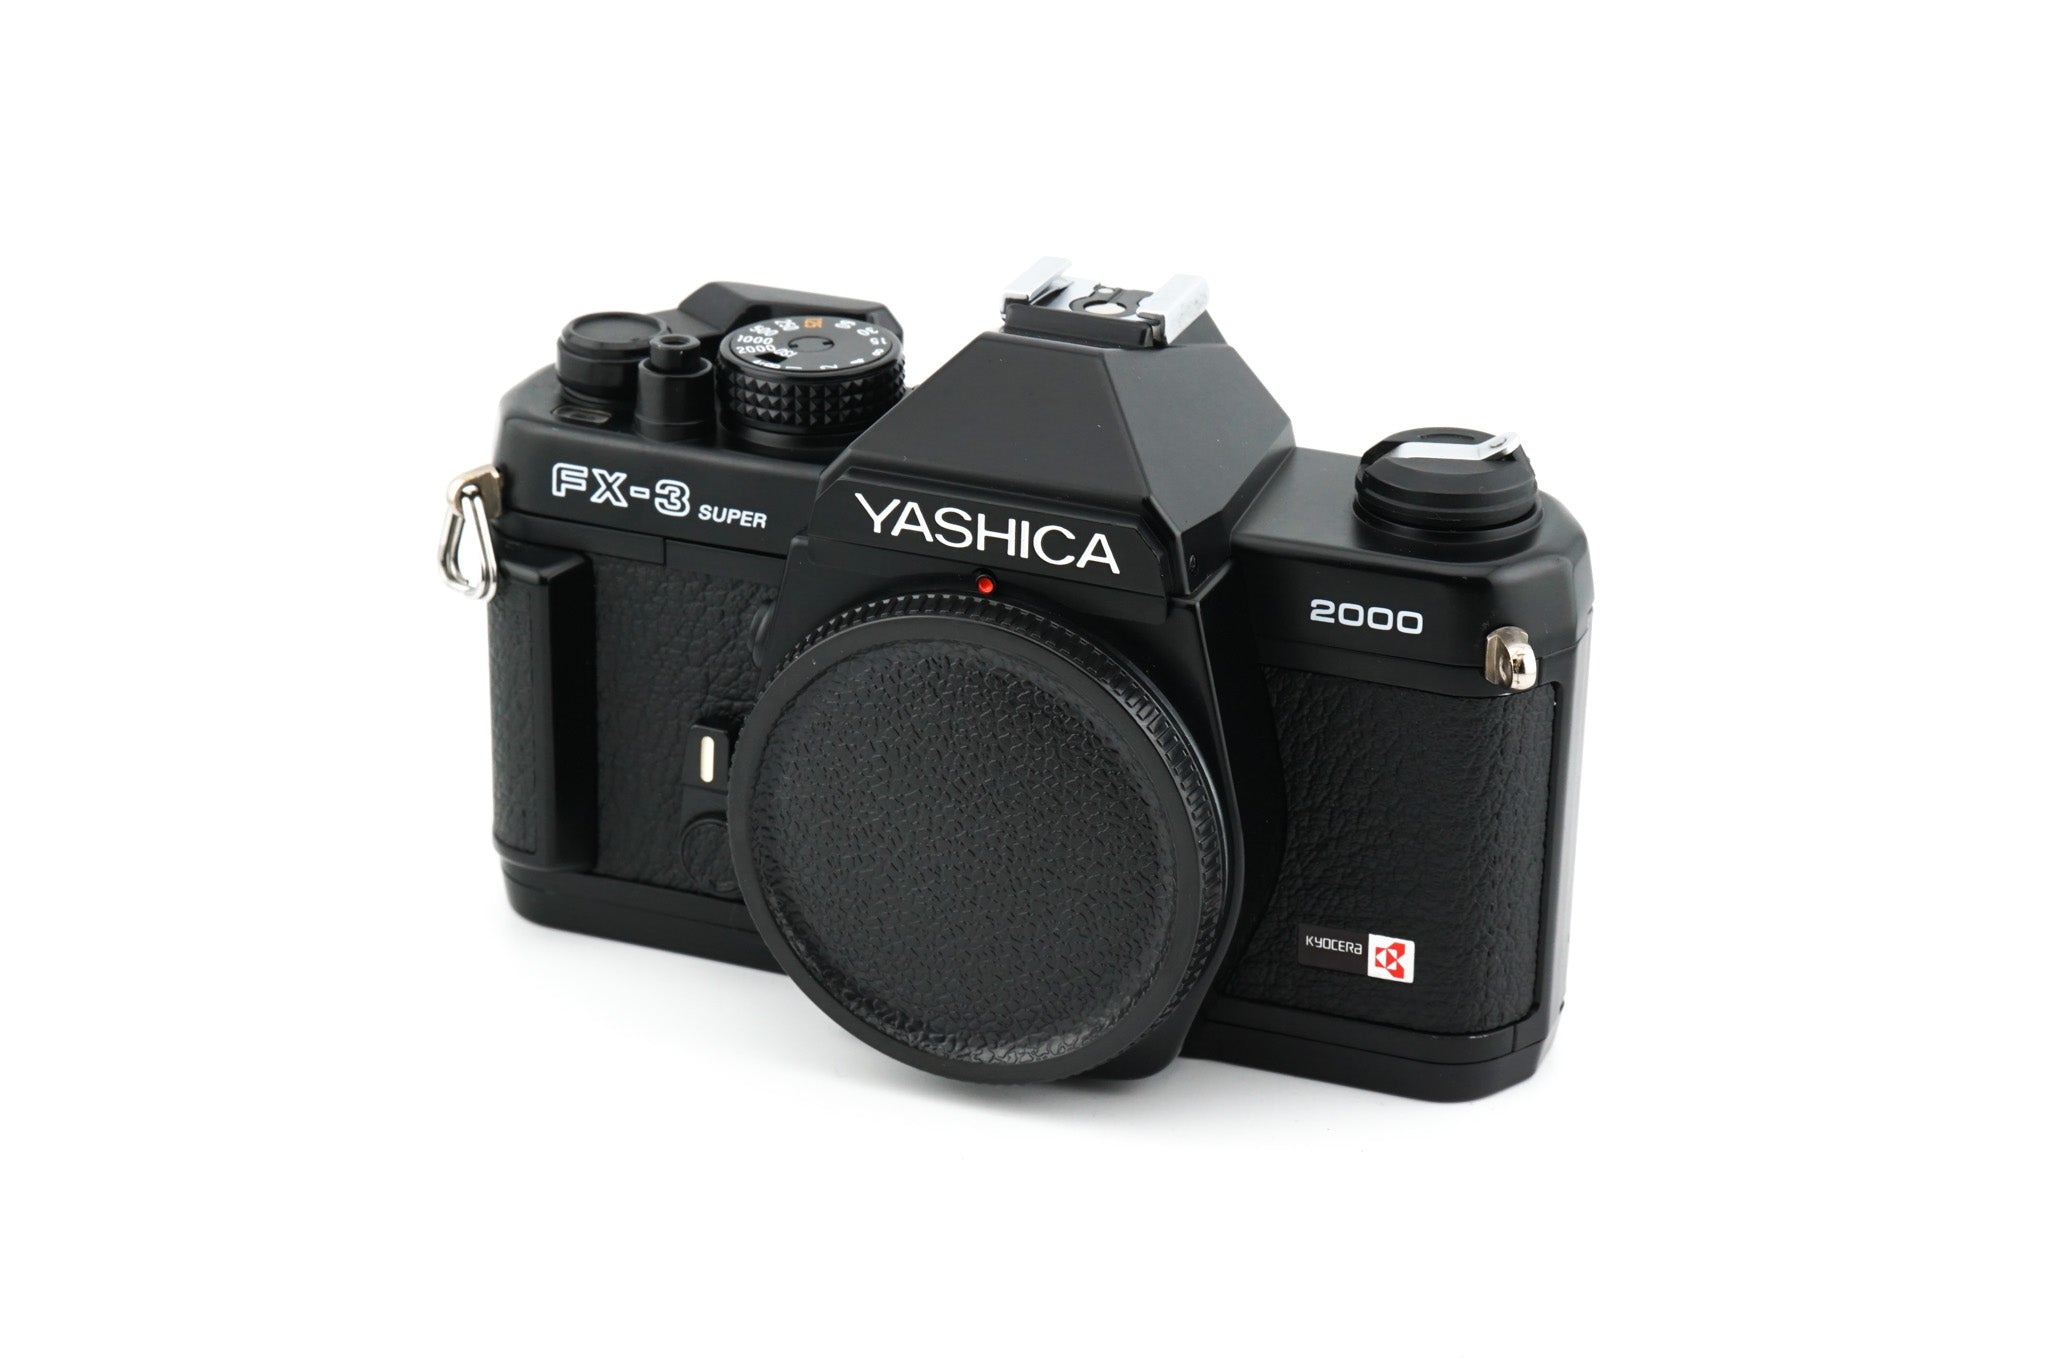 すみっこのカメラショップ★YASHICA ヤシカ カメラ FX-3 super 2000